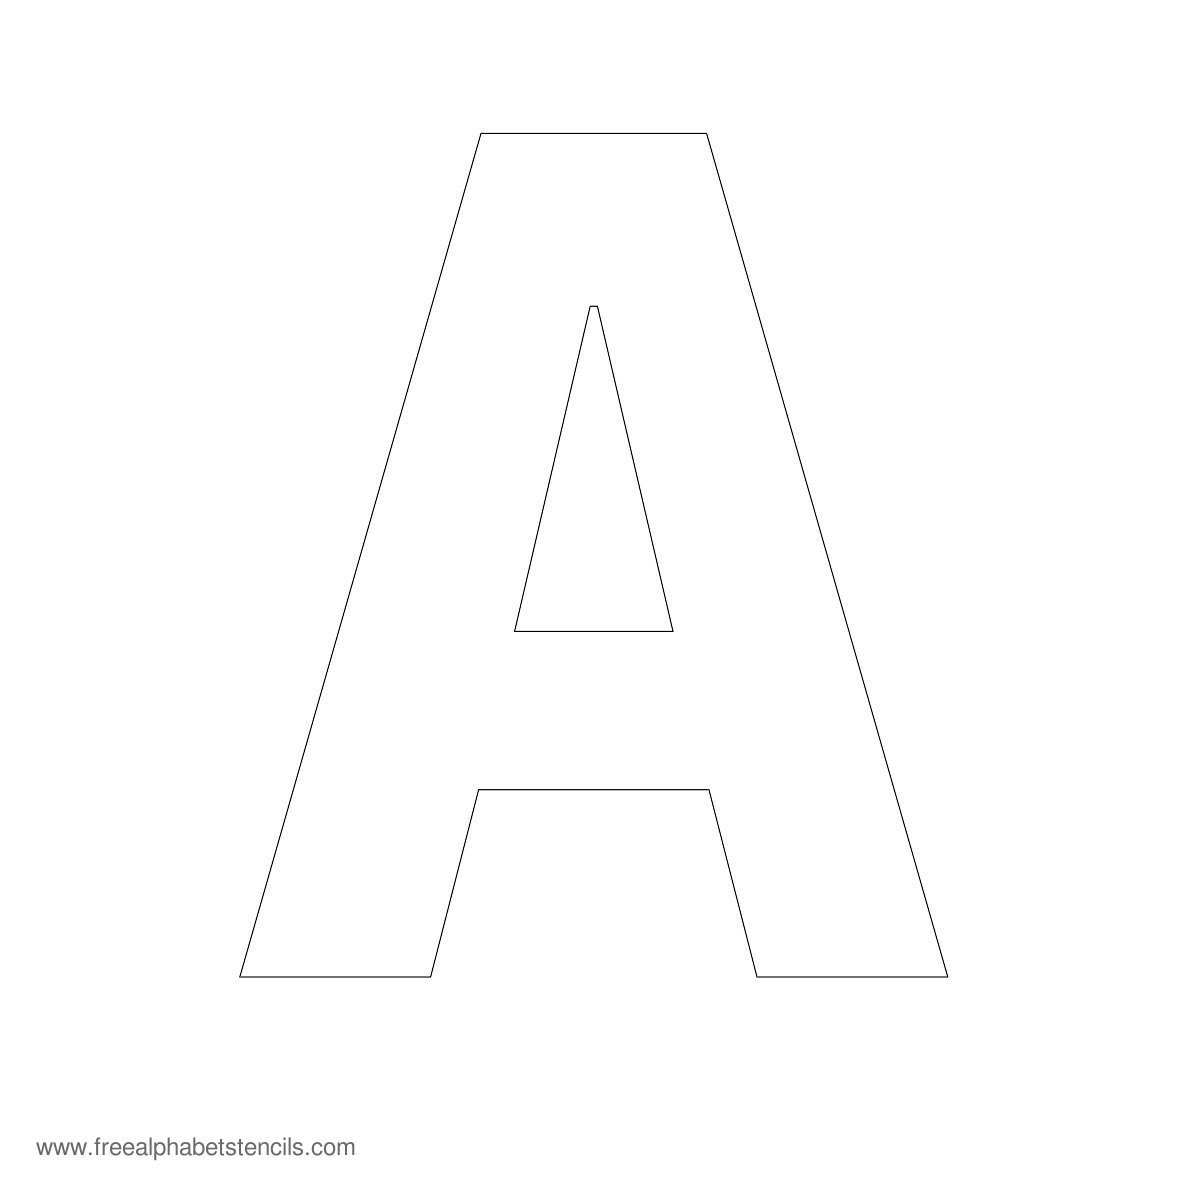 Large Alphabet Stencils | Freealphabetstencils - One Inch Stencils Printable Free